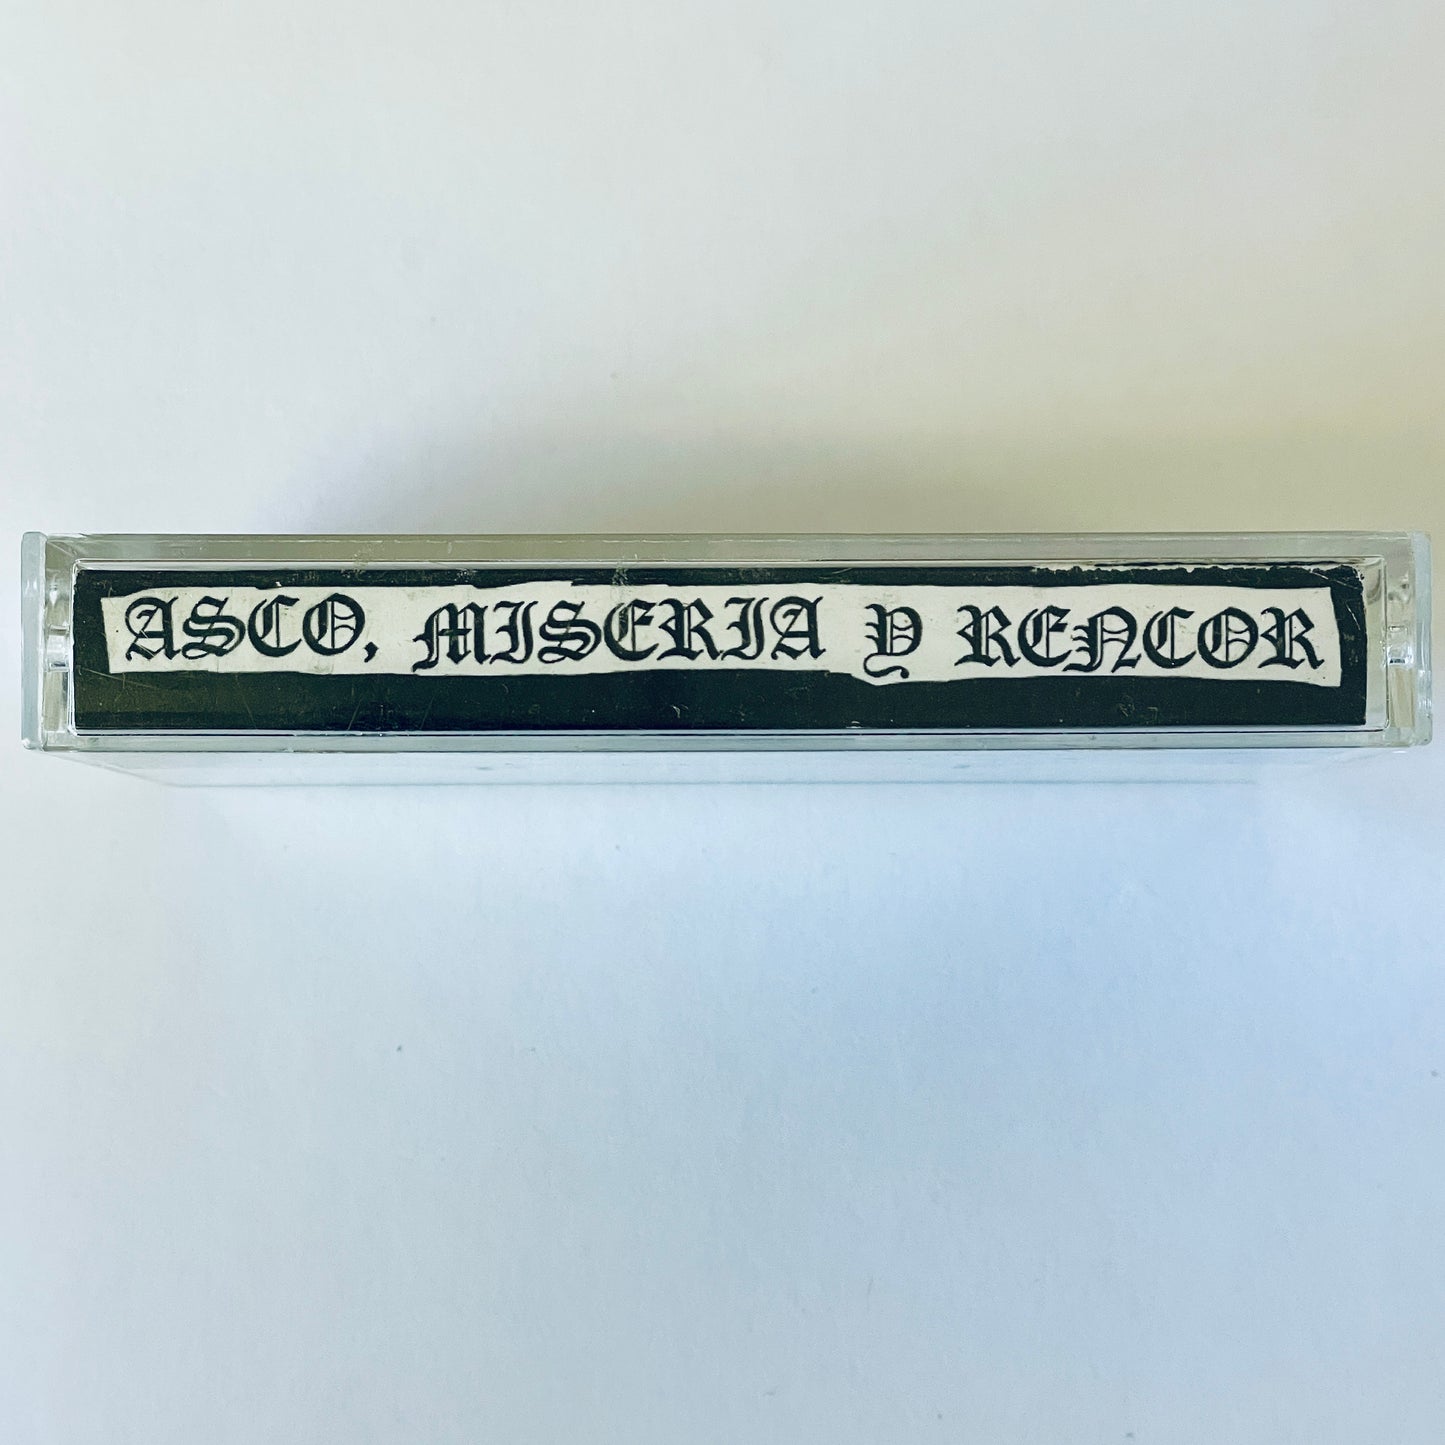 Atonement – Asco, miseria y rencor cassette tape (used)